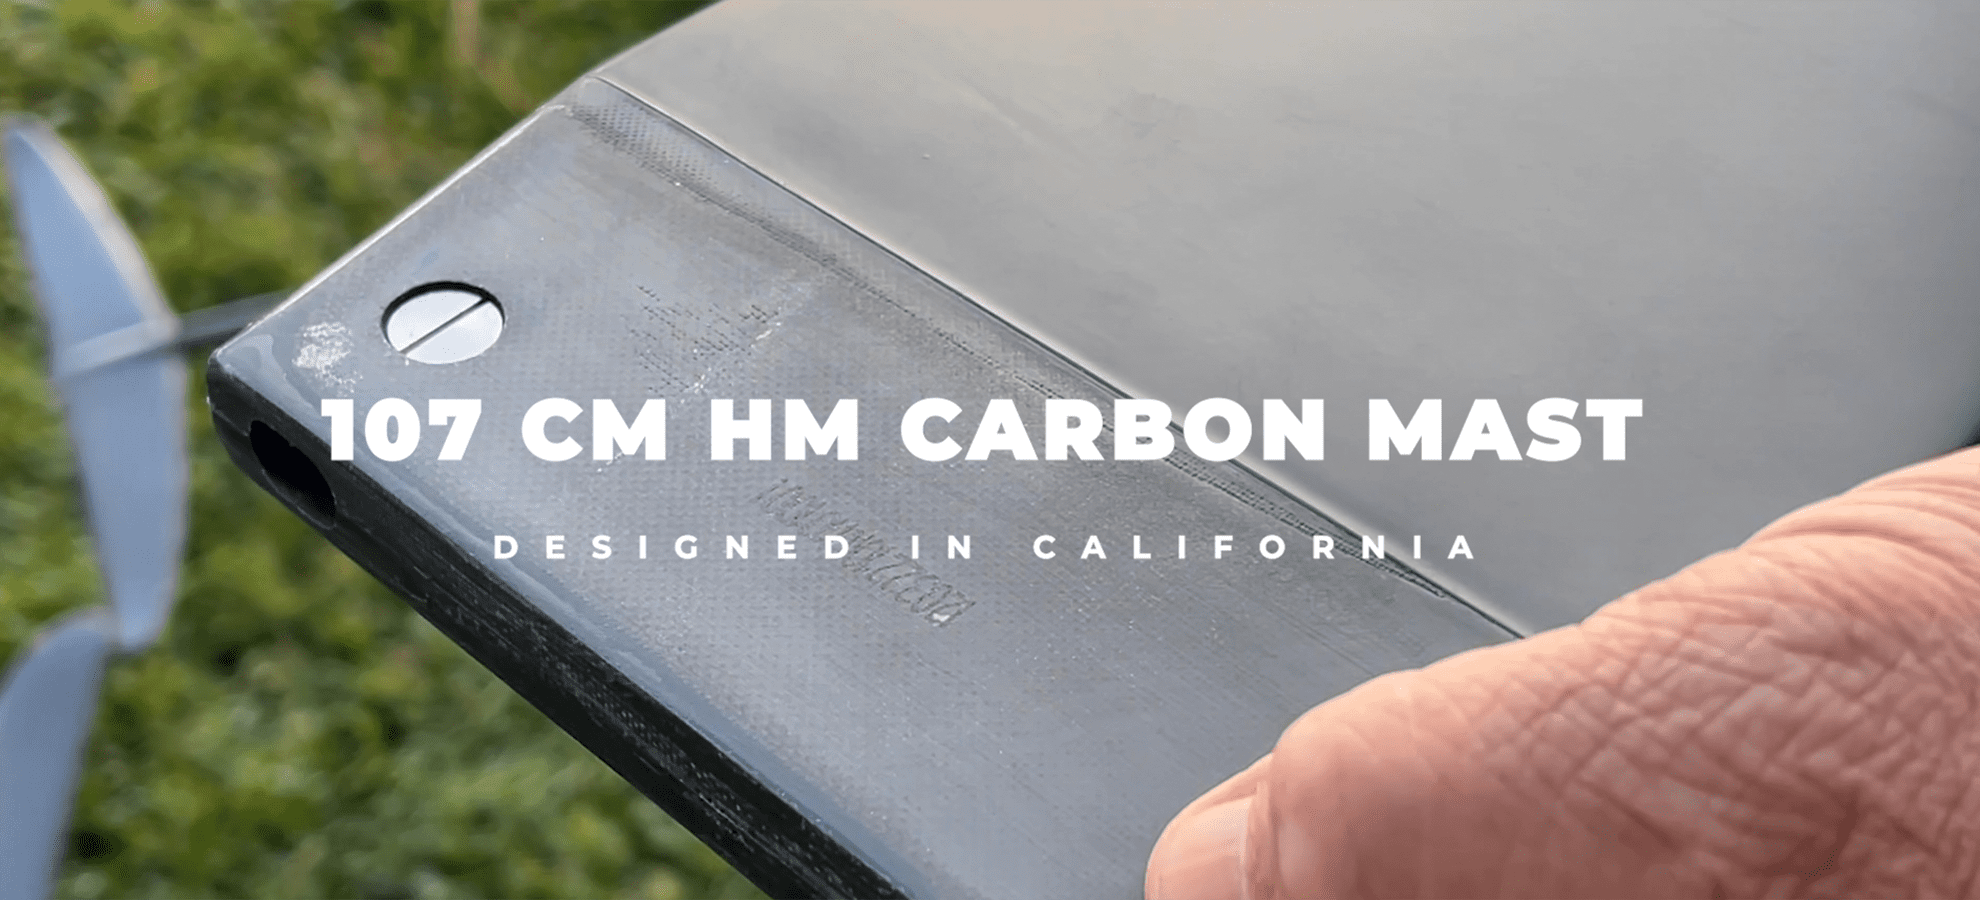 107cm HM carbon mast 2023 F4 New Windsurf models 2023 - 107cm HM Carbon Mast